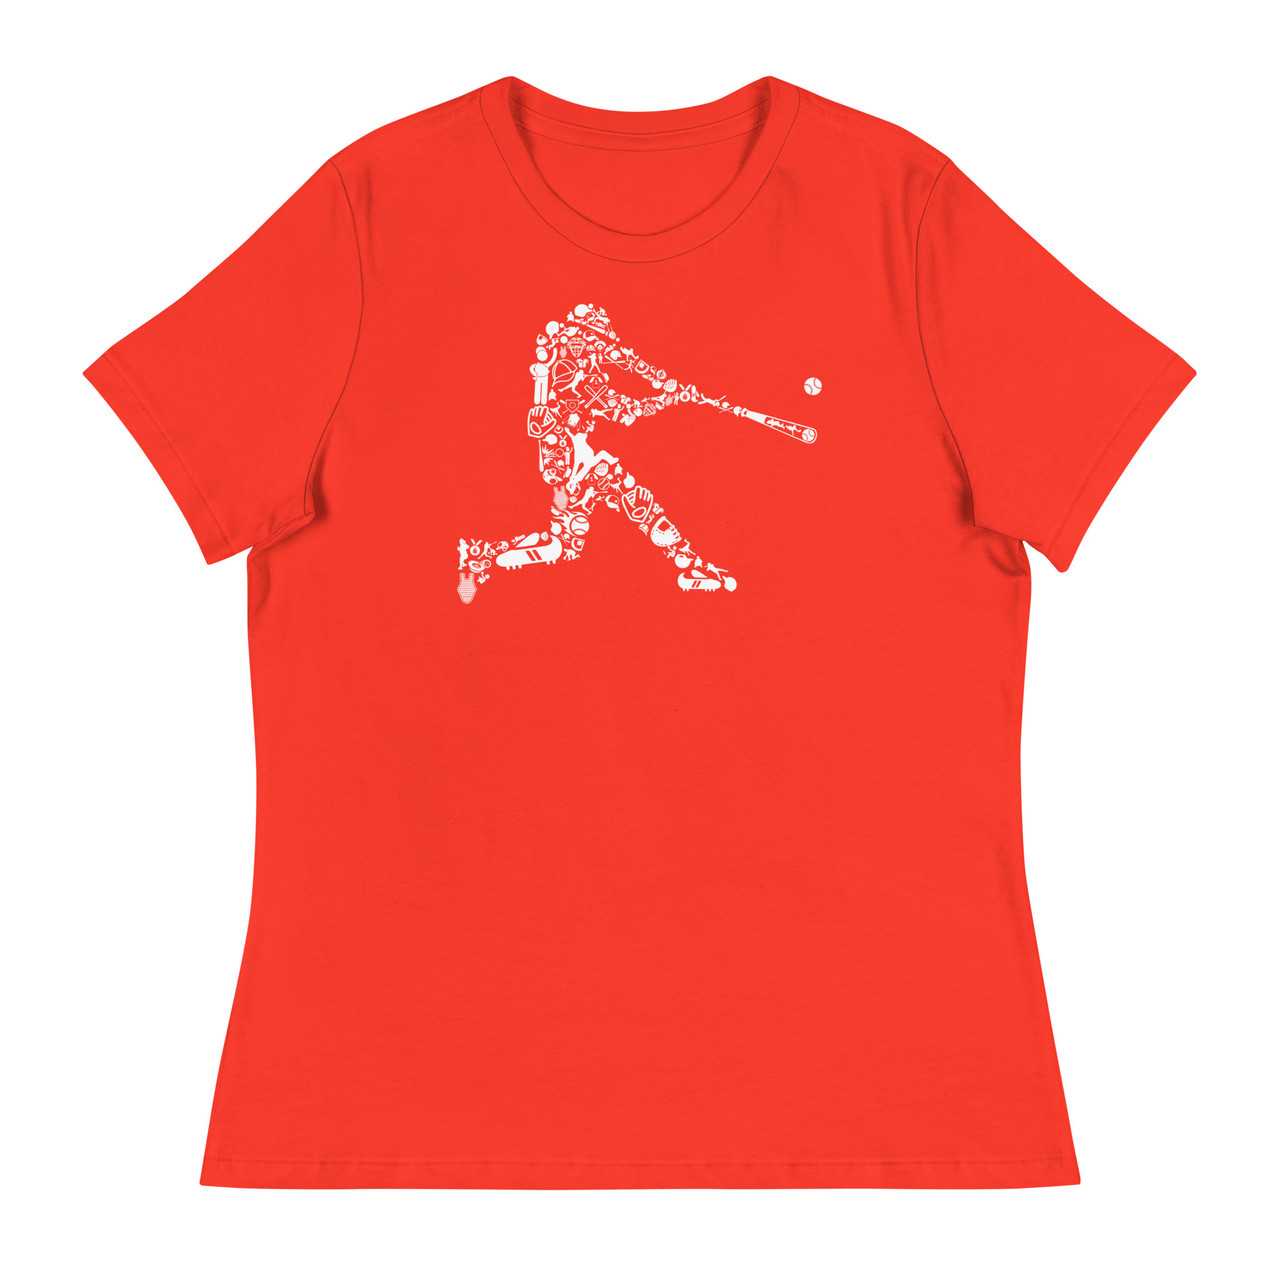 Baseball Player Women's Relaxed T-Shirt - Bella + Canvas 6400 